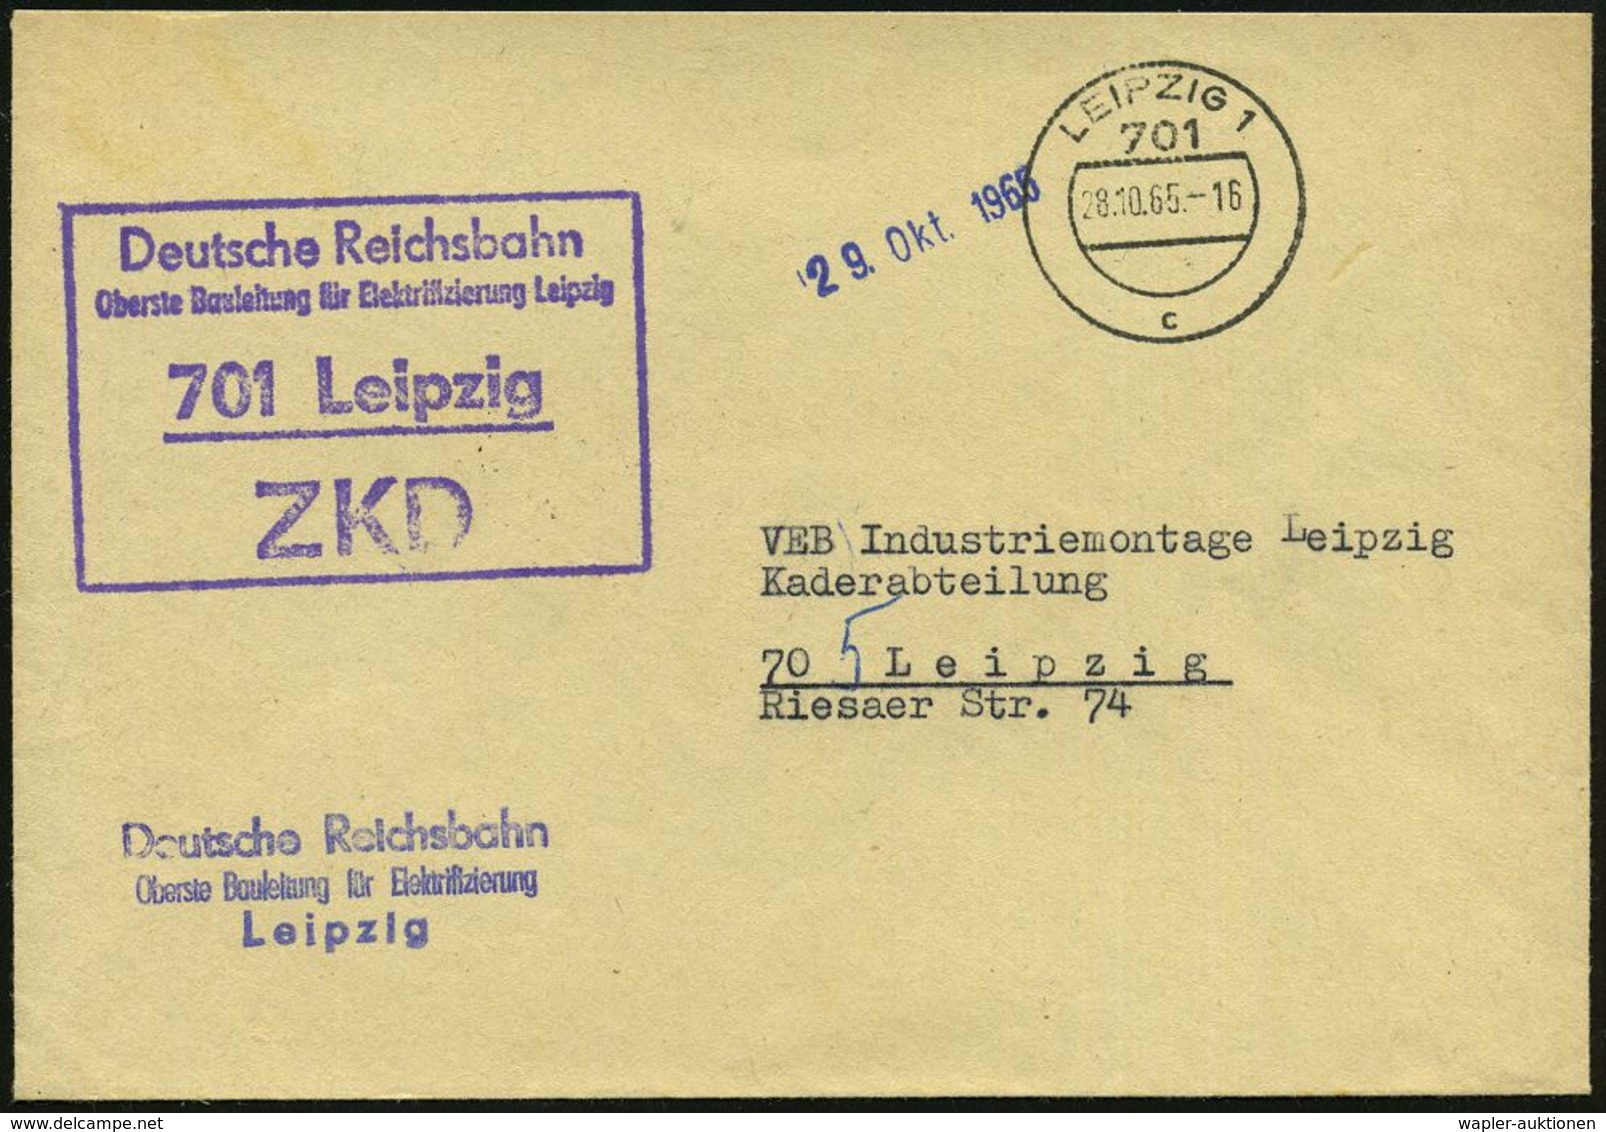 EISENBAHN-GESELLSCHAFTEN / REICHSBAHN / BUNDESBAHN : 701 Leipzig/ ZKD/ Deutsche Reichsbahn/ Oberste Bauleitung Für Elekt - Trains